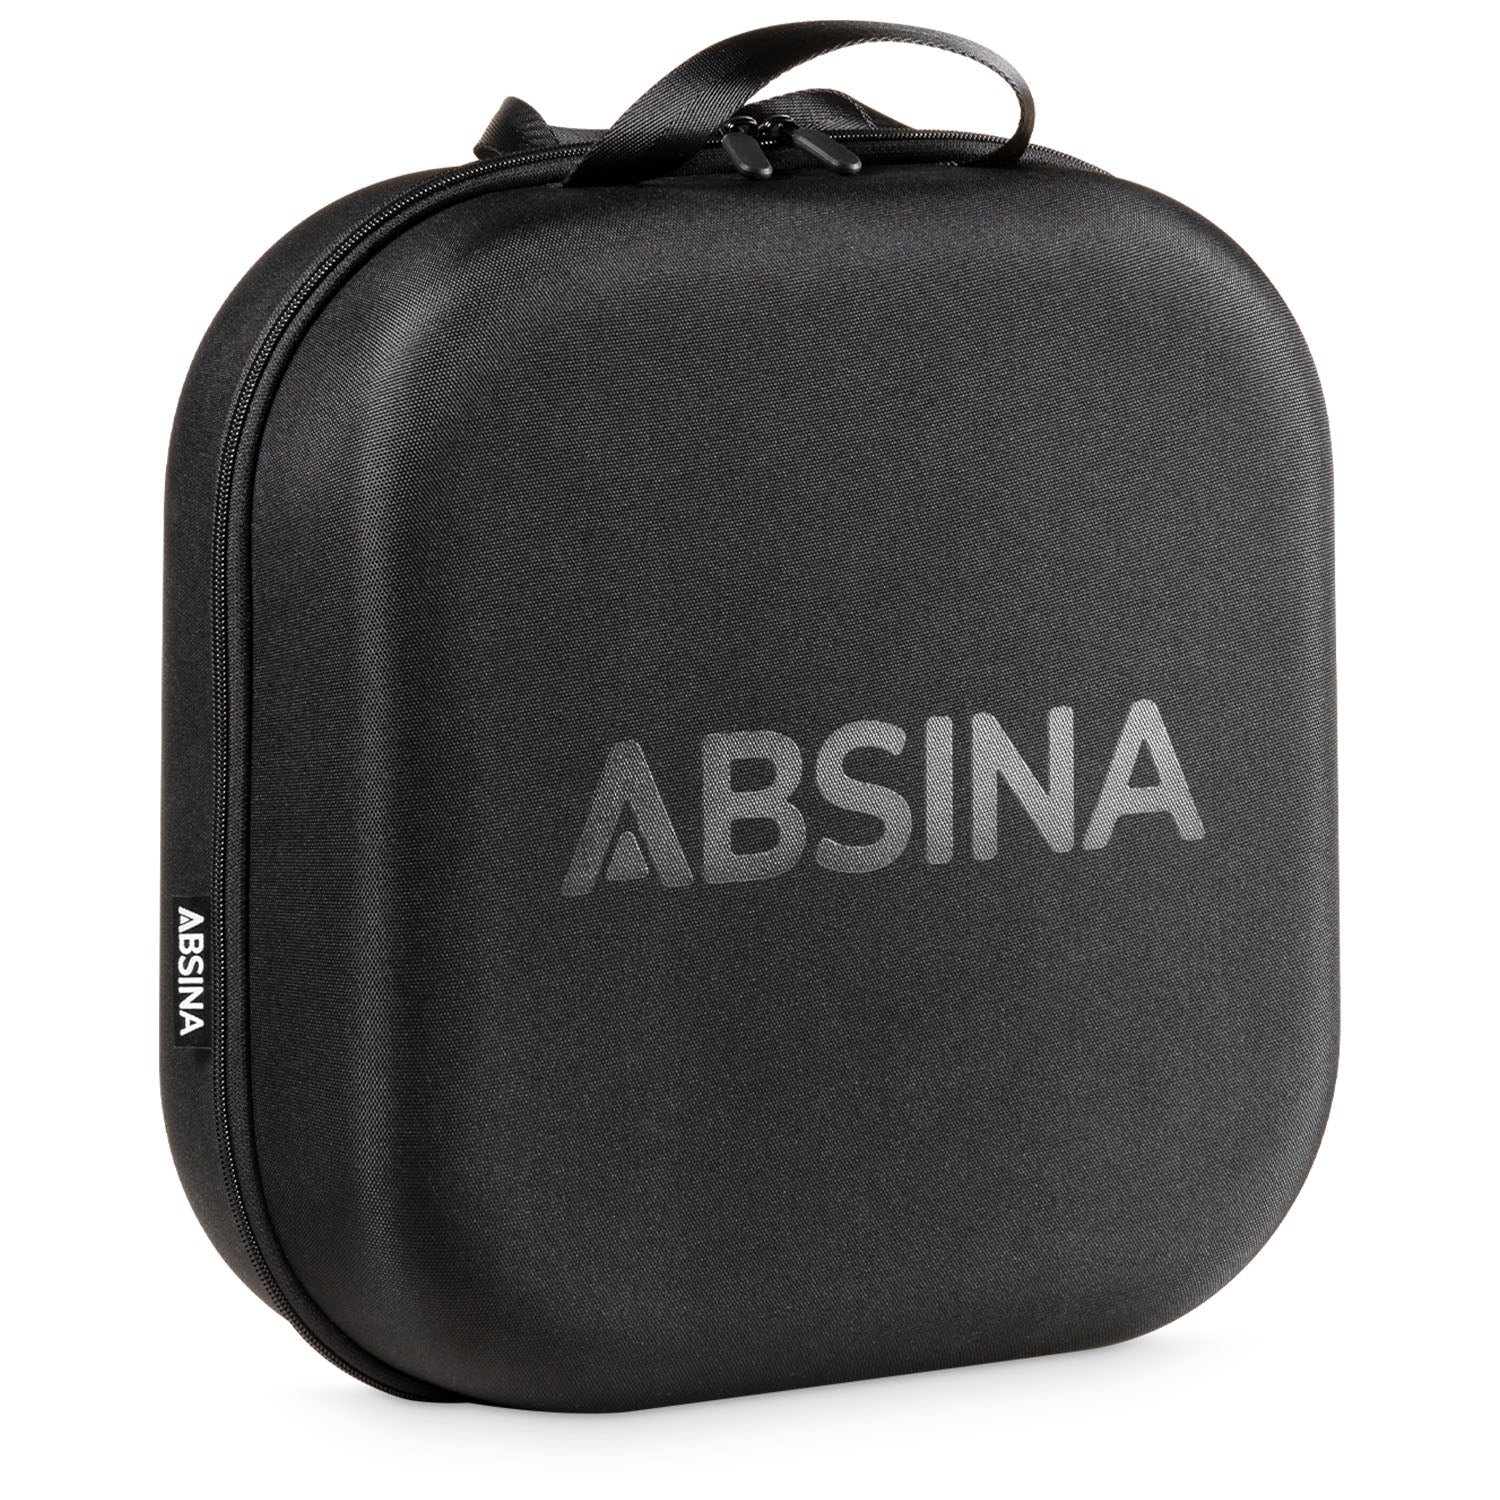 https://www.absina.com/cdn/shop/files/ABSINA-Hardcase-Tasche-mit-Verschluss.jpg?v=1693563844&width=1500